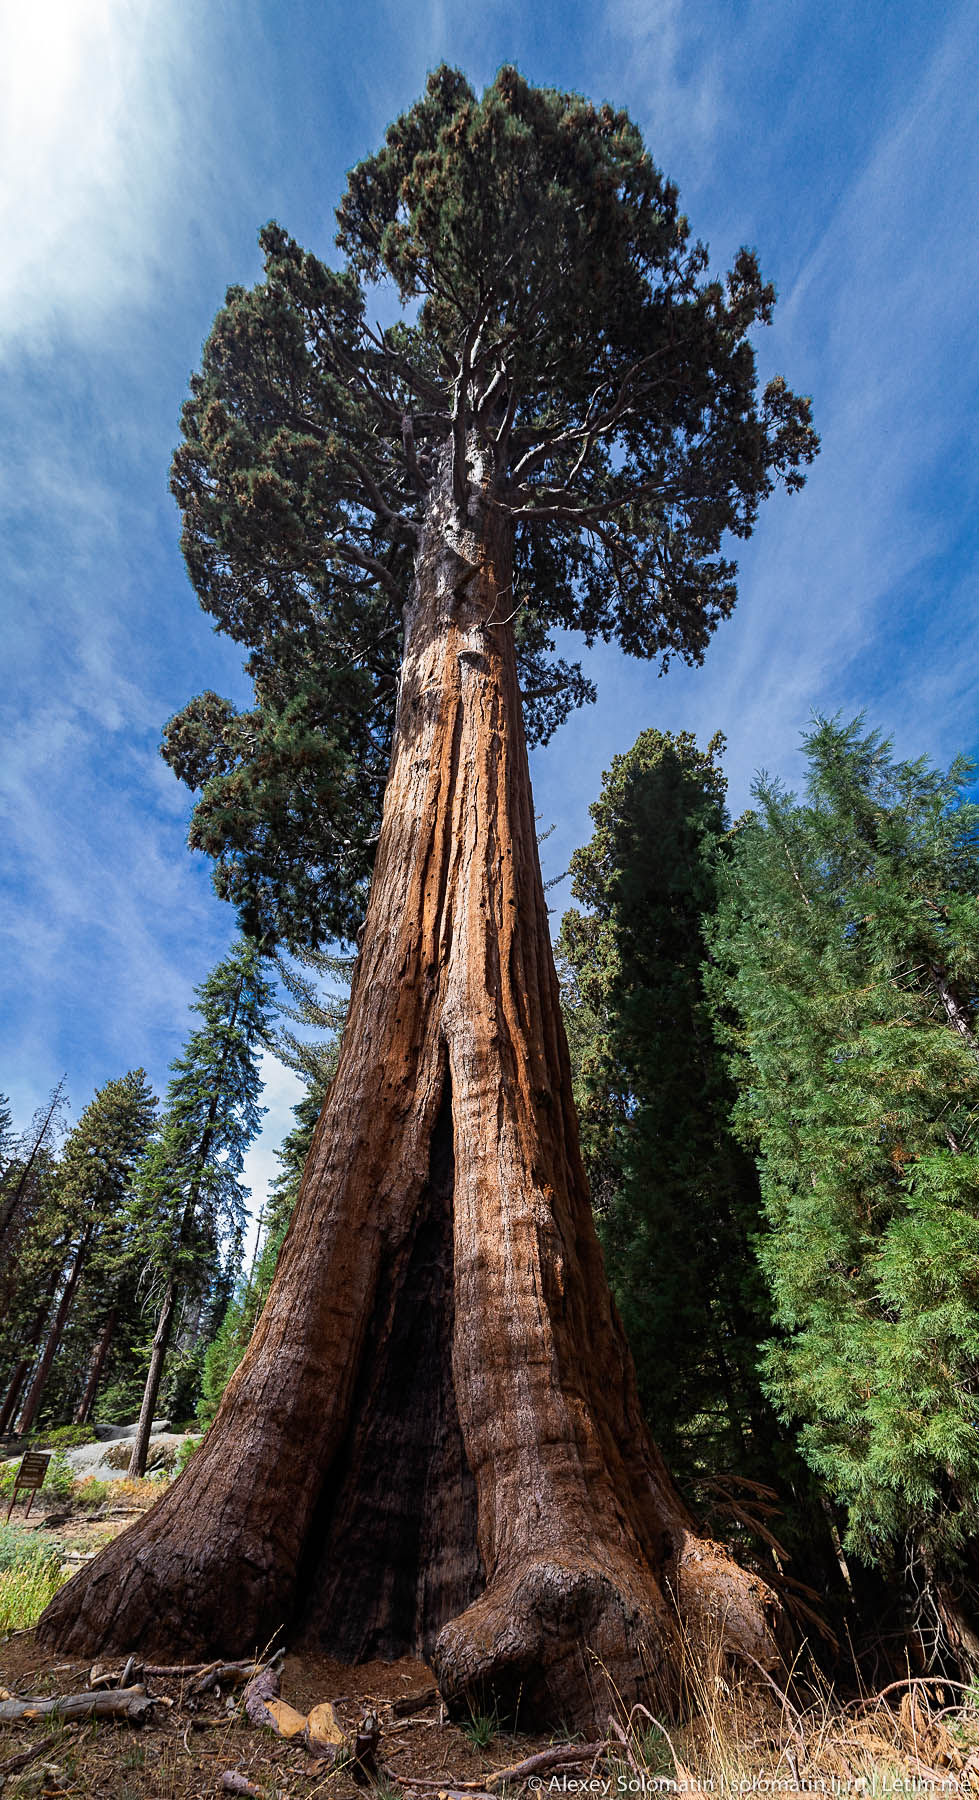 Самые большие деревья в мире дерево, секвойи, деревья, самые, растут, возраст, секвой, Здесь, территории, деревьев, гигантские, размеров, парка, высоту, поваленное, которую, Секвойя, ствола, можно, Калифорнии